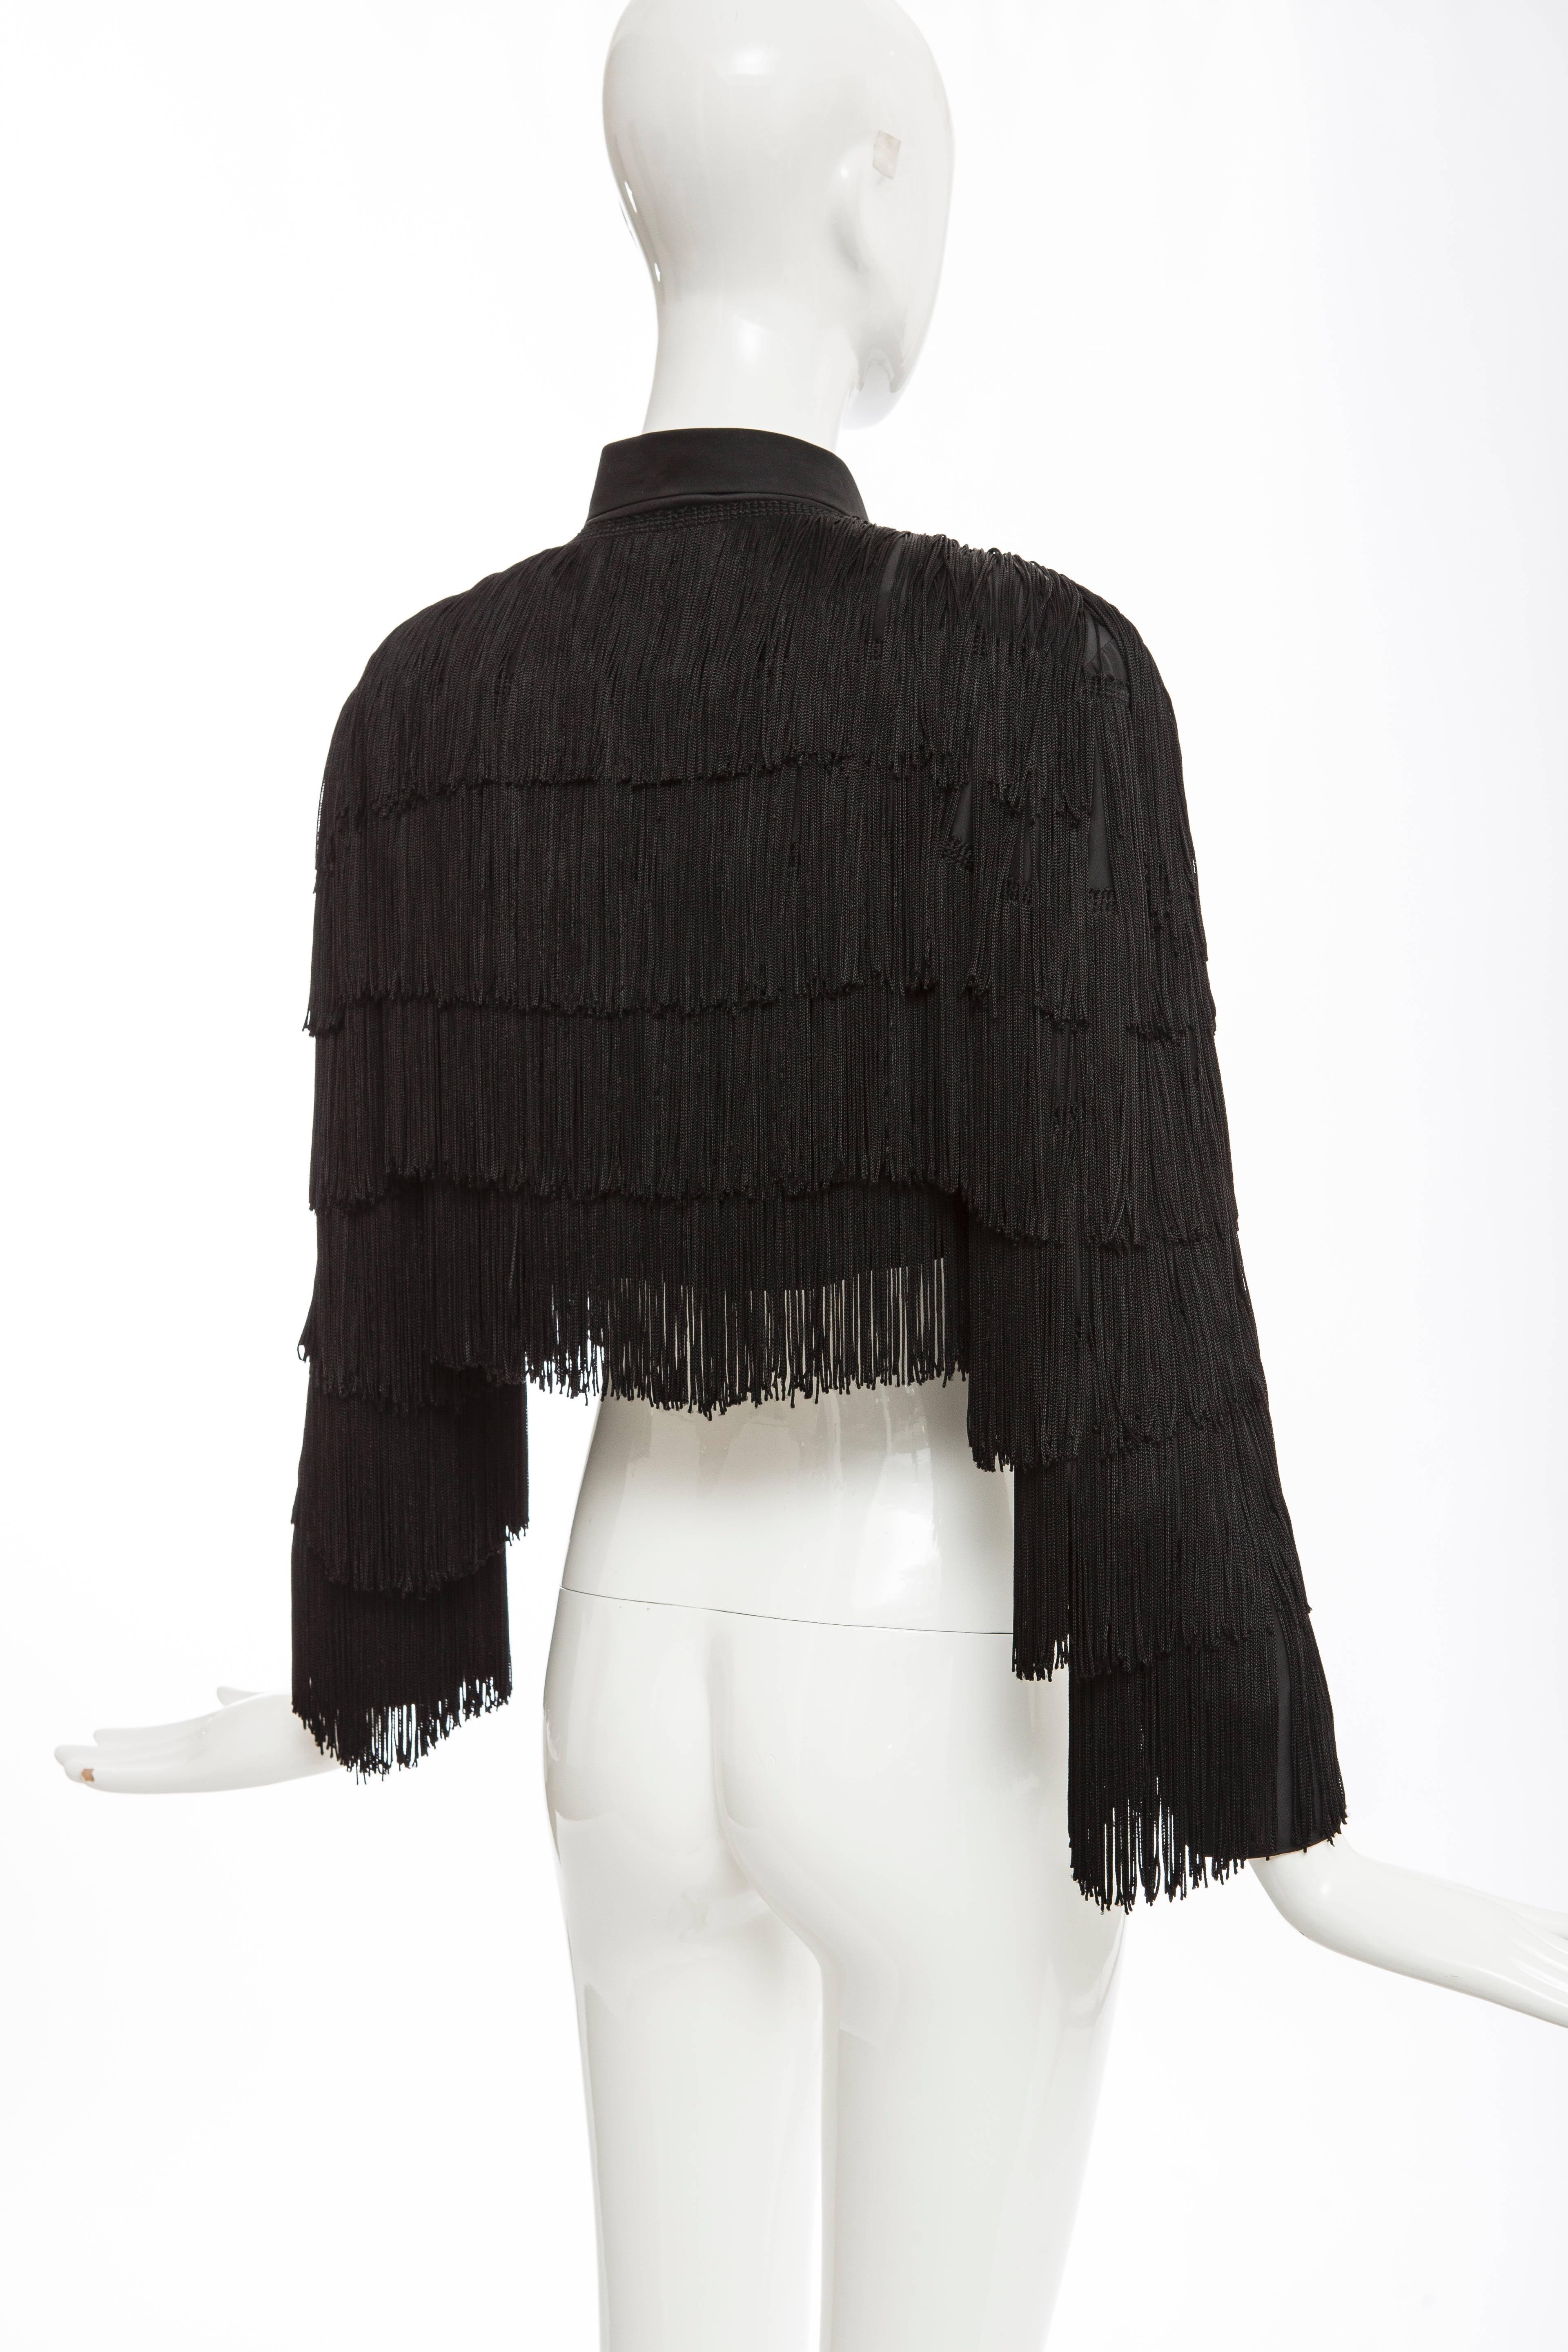 Norma Kamali OMO Black Fringe Cropped Jacket, Circa 1980's 3